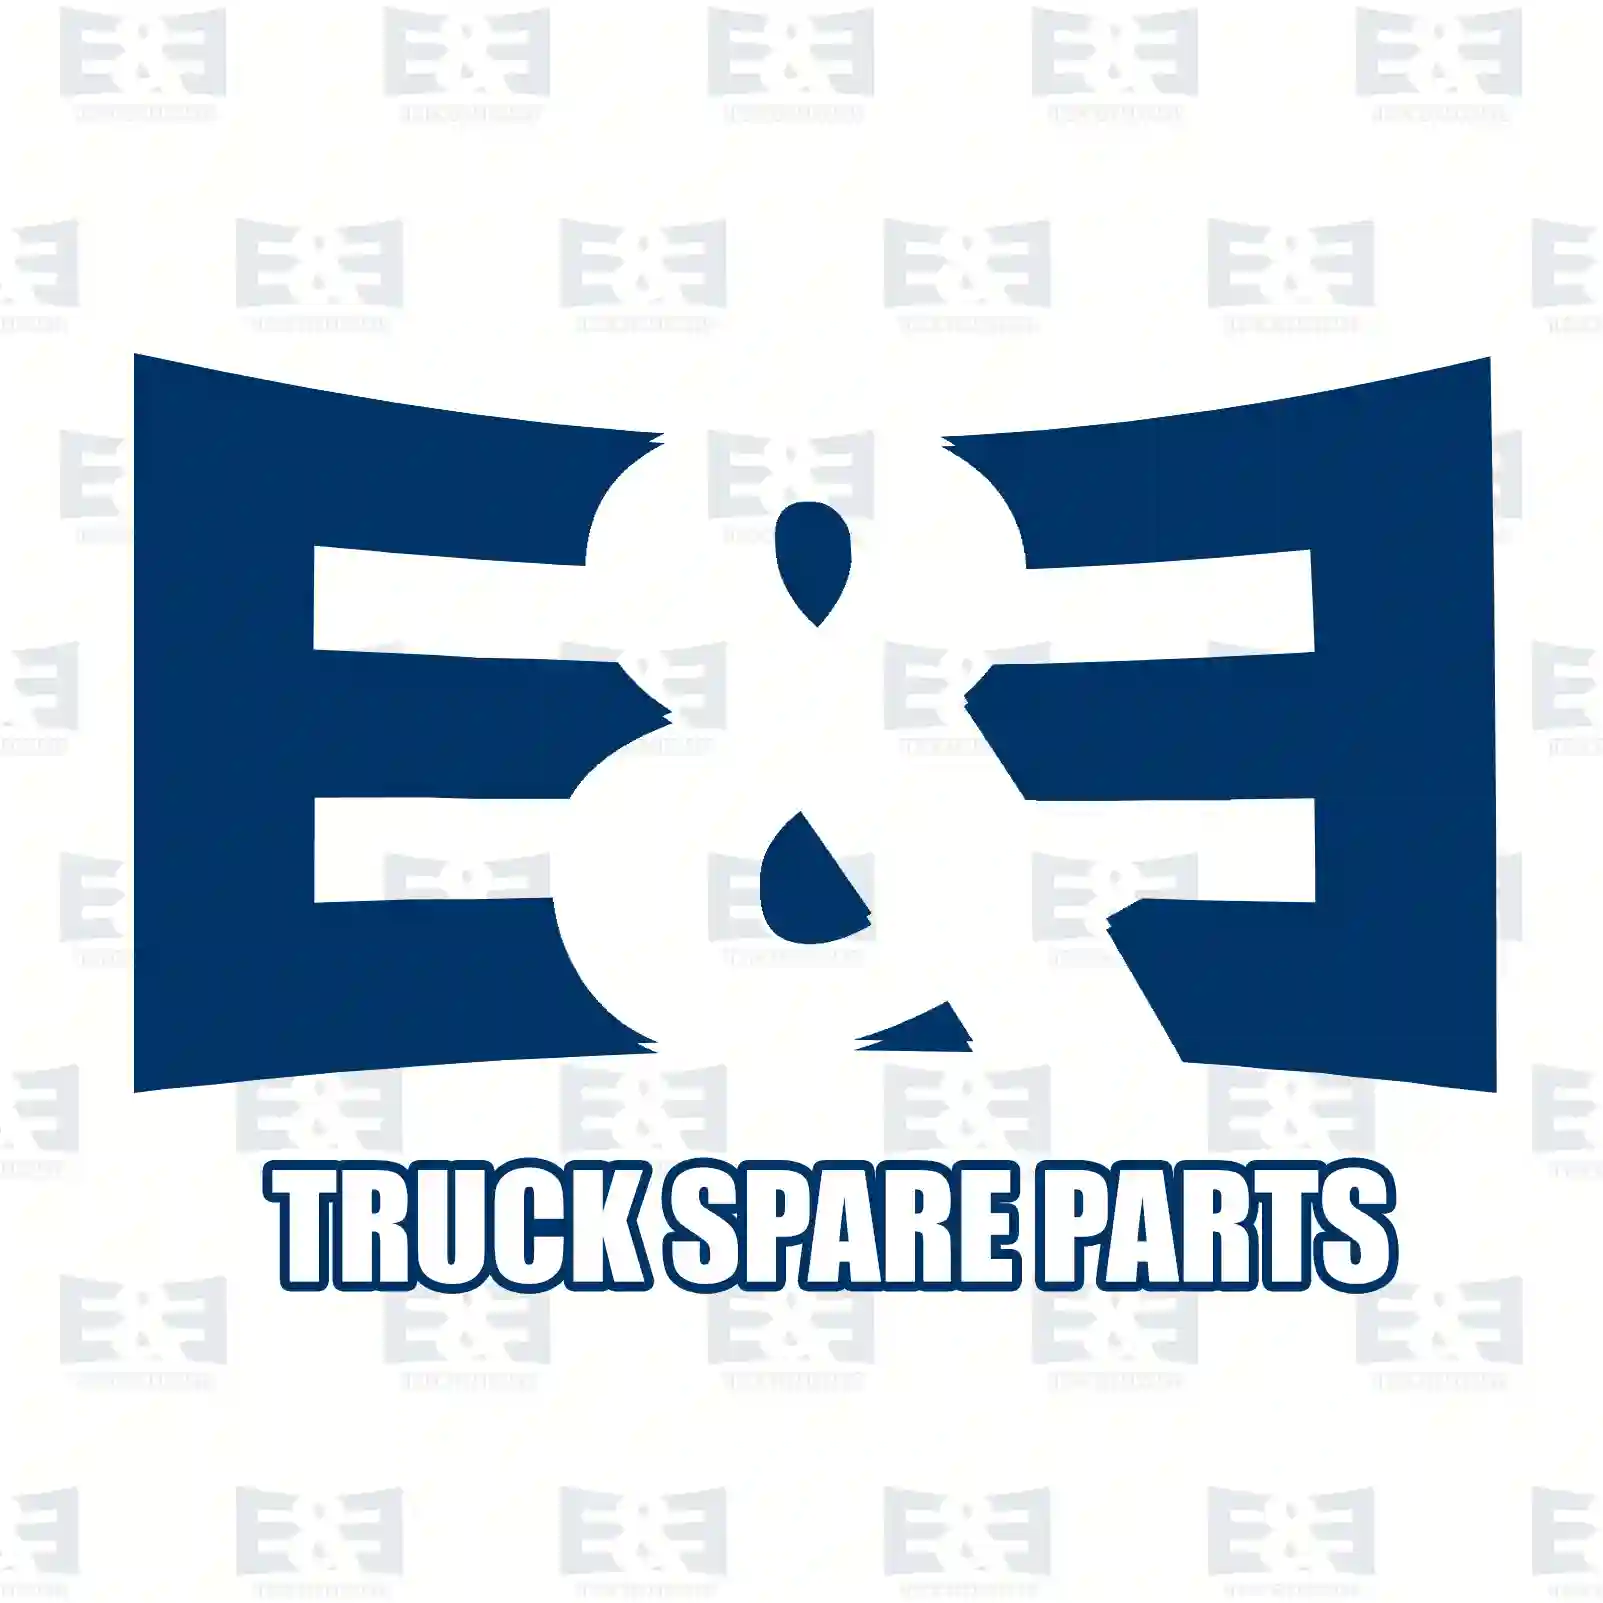 Wiper linkage, with motor, 2E2280163, 02916402, 5802101152, 99439635 ||  2E2280163 E&E Truck Spare Parts | Truck Spare Parts, Auotomotive Spare Parts Wiper linkage, with motor, 2E2280163, 02916402, 5802101152, 99439635 ||  2E2280163 E&E Truck Spare Parts | Truck Spare Parts, Auotomotive Spare Parts